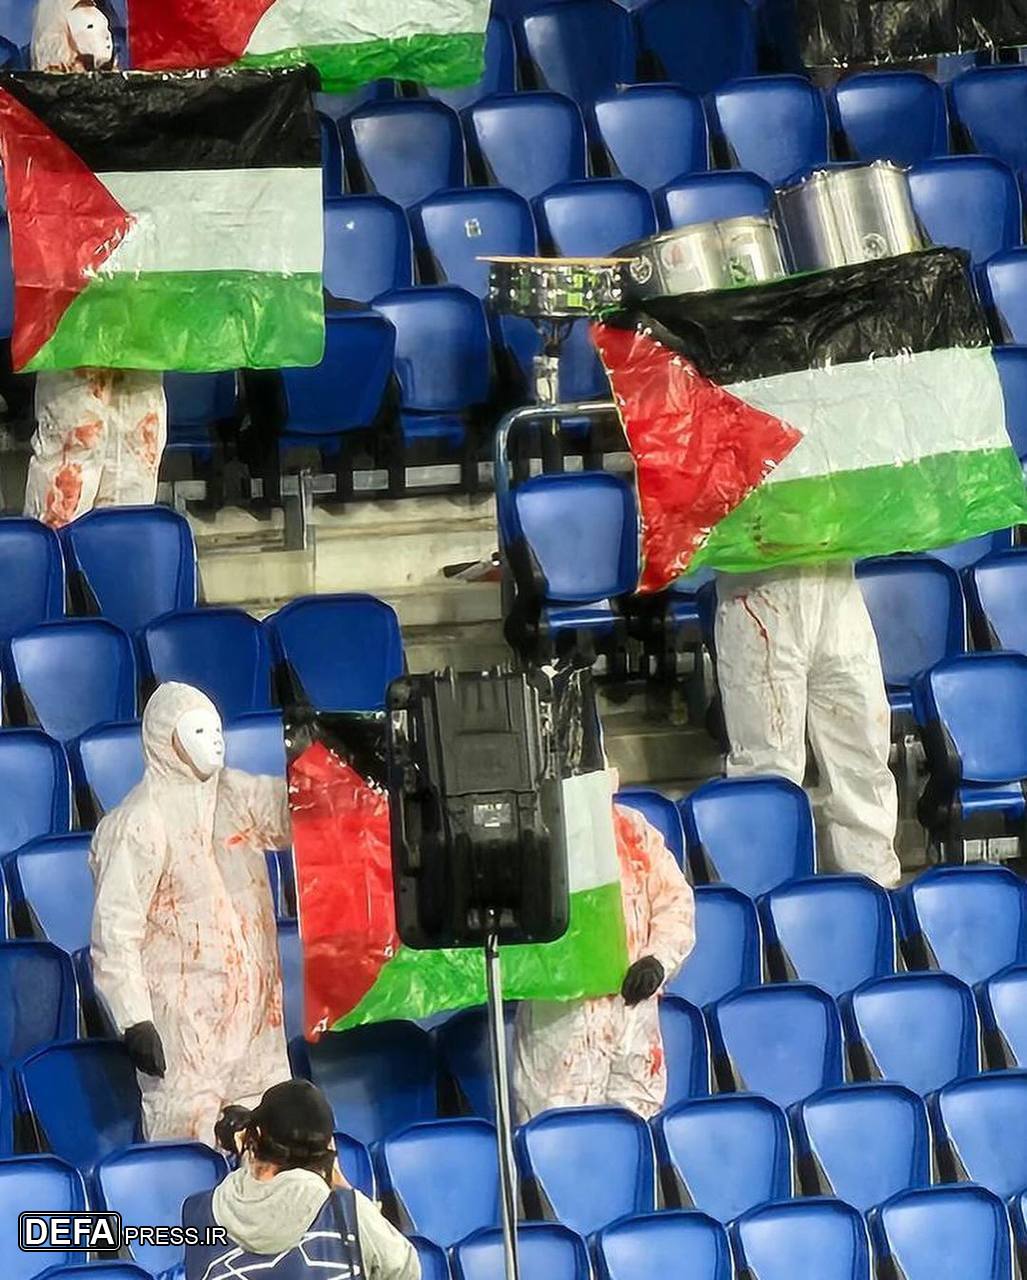 حرکت طرفداران رئال سوسیداد در حمایت از فلسطین+ فیلم و تصاویر